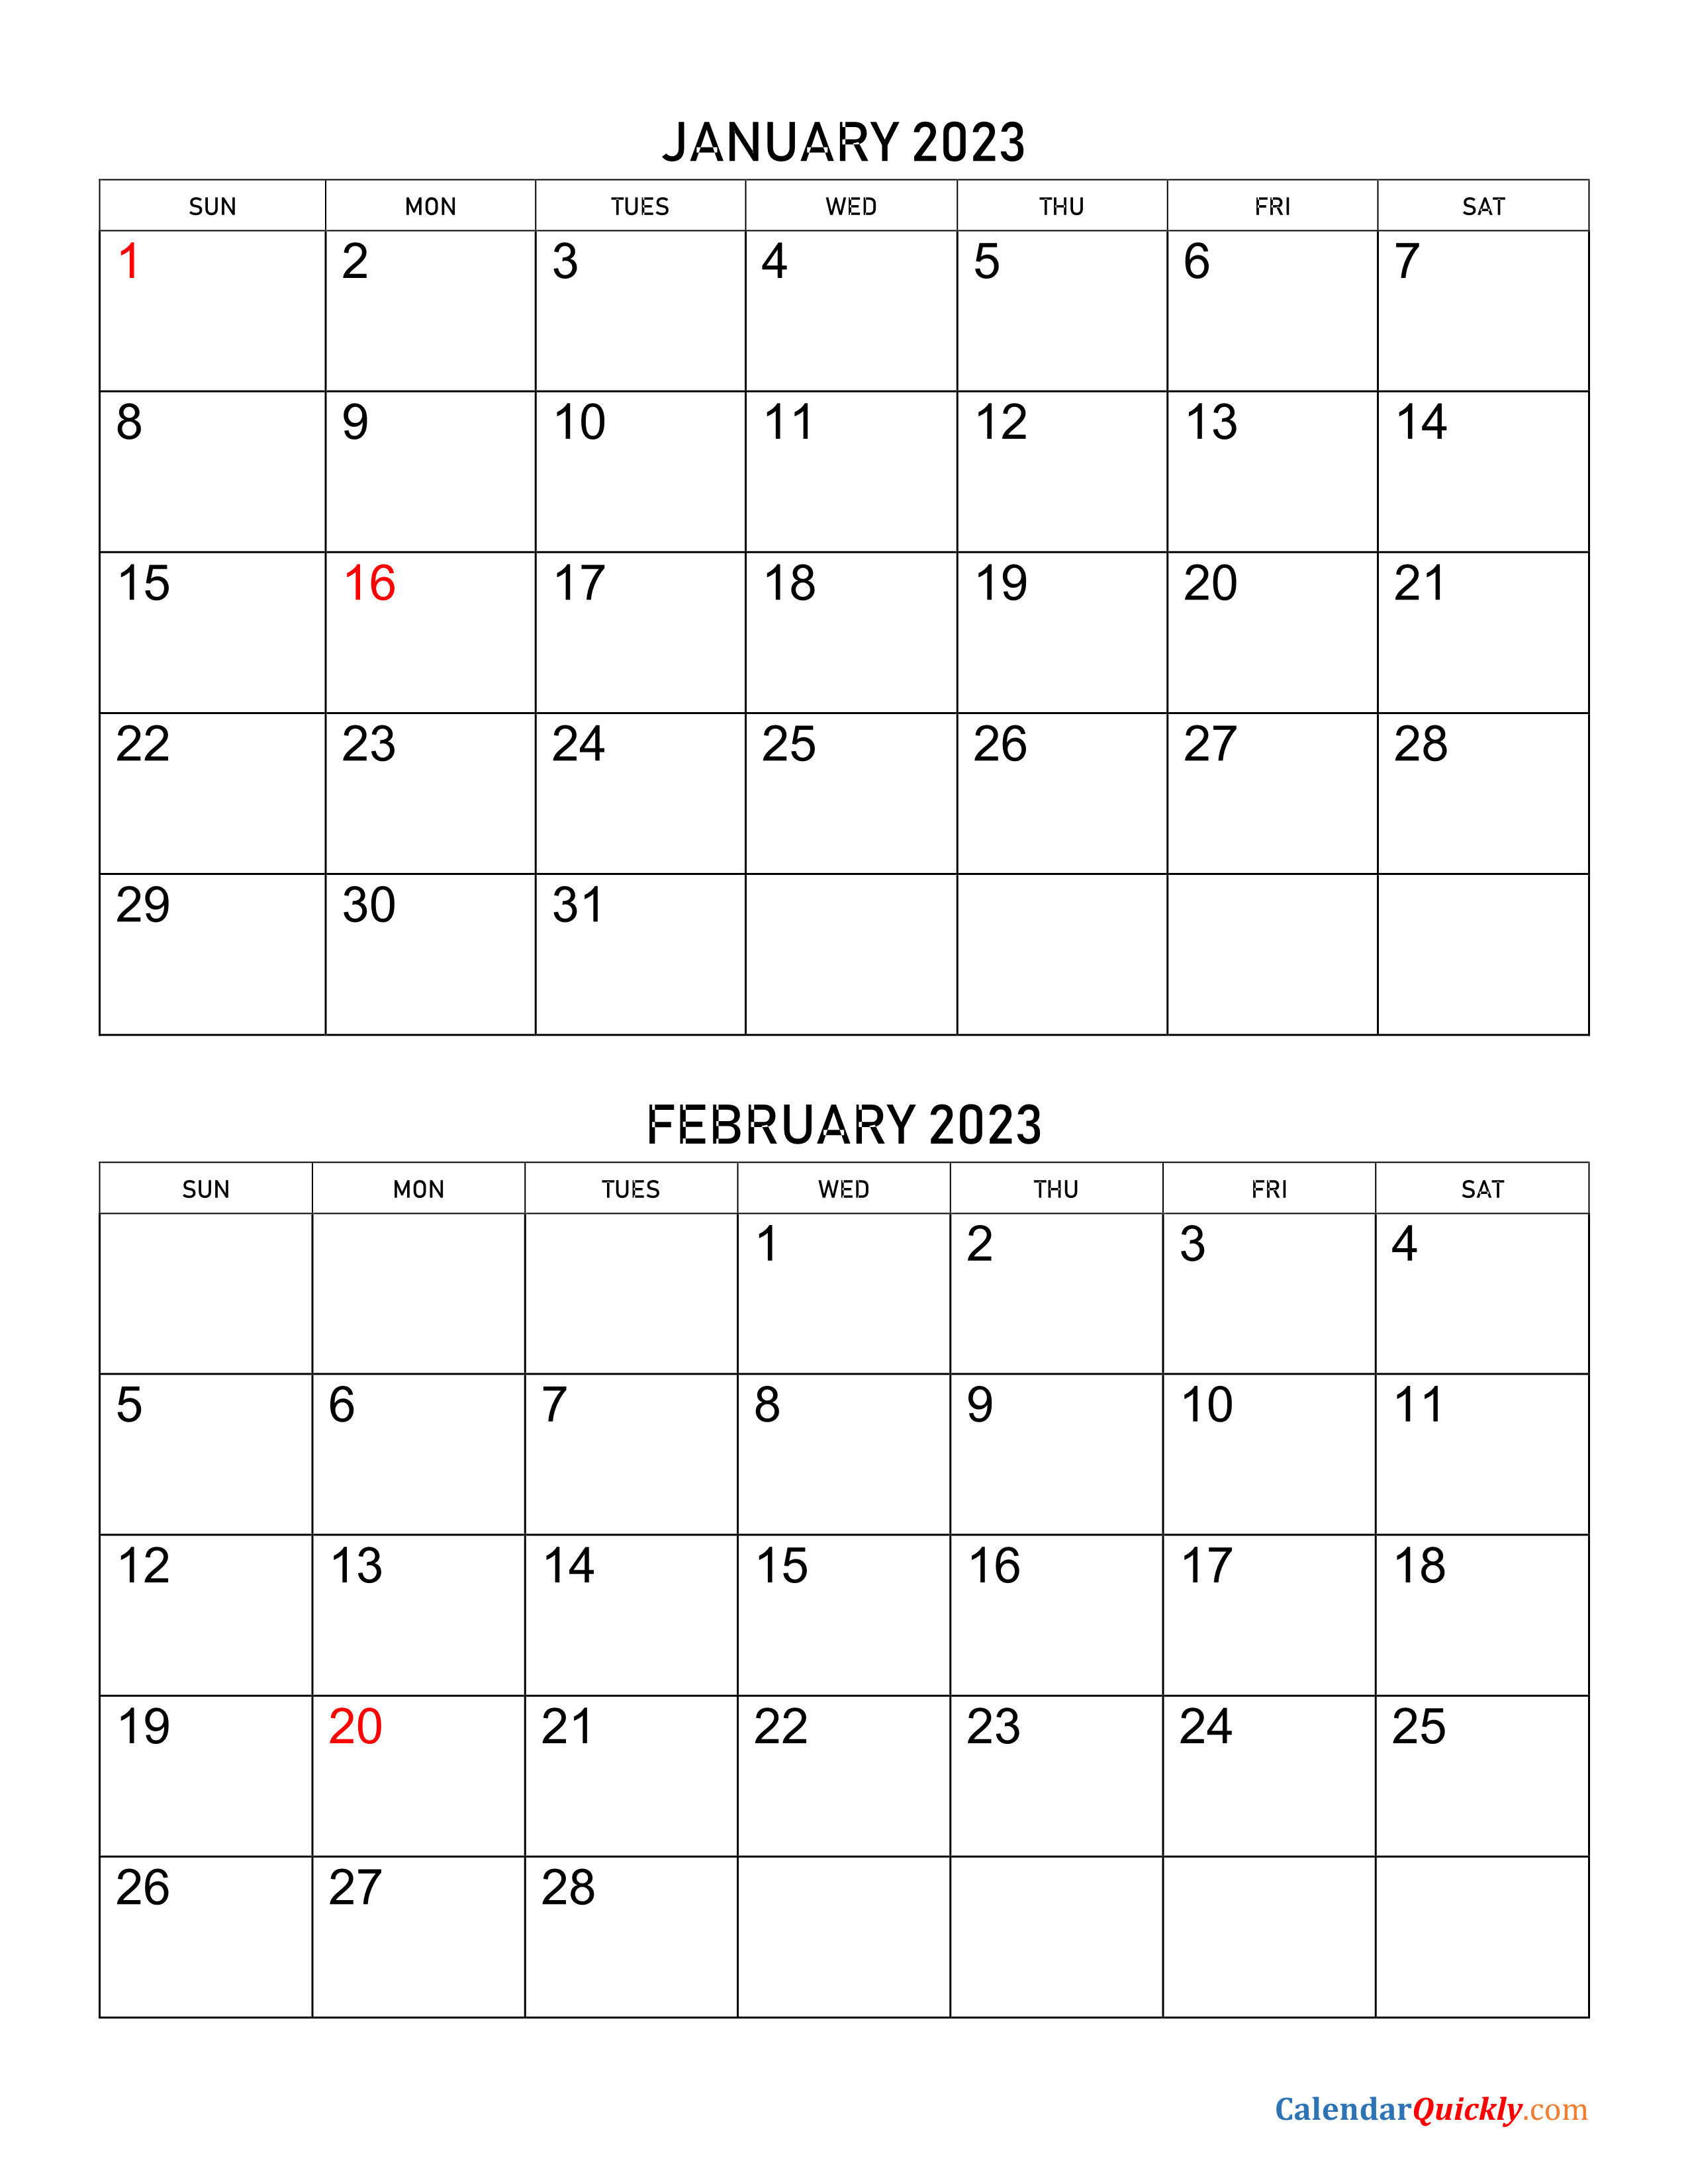 January and February 2023 Calendar Calendar Quickly